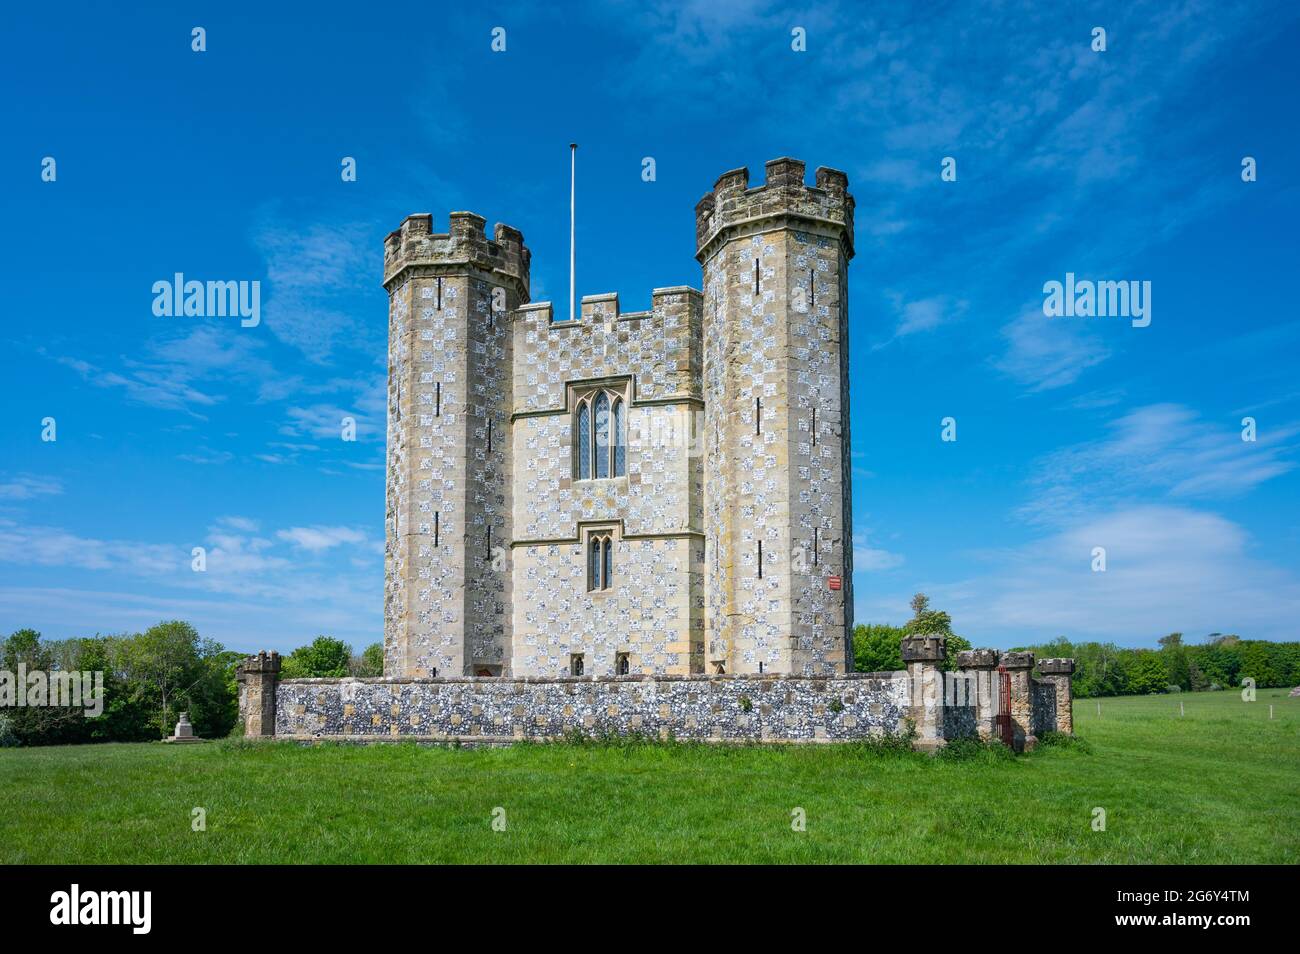 Hiorne Turm in Arundel Park, des AKA Hiorne Turm, eine Torheit des 18. Jahrhunderts von Sir Francis Hiorne in Arundel Park, Arundel, West Sussex, Großbritannien gebaut. Stockfoto